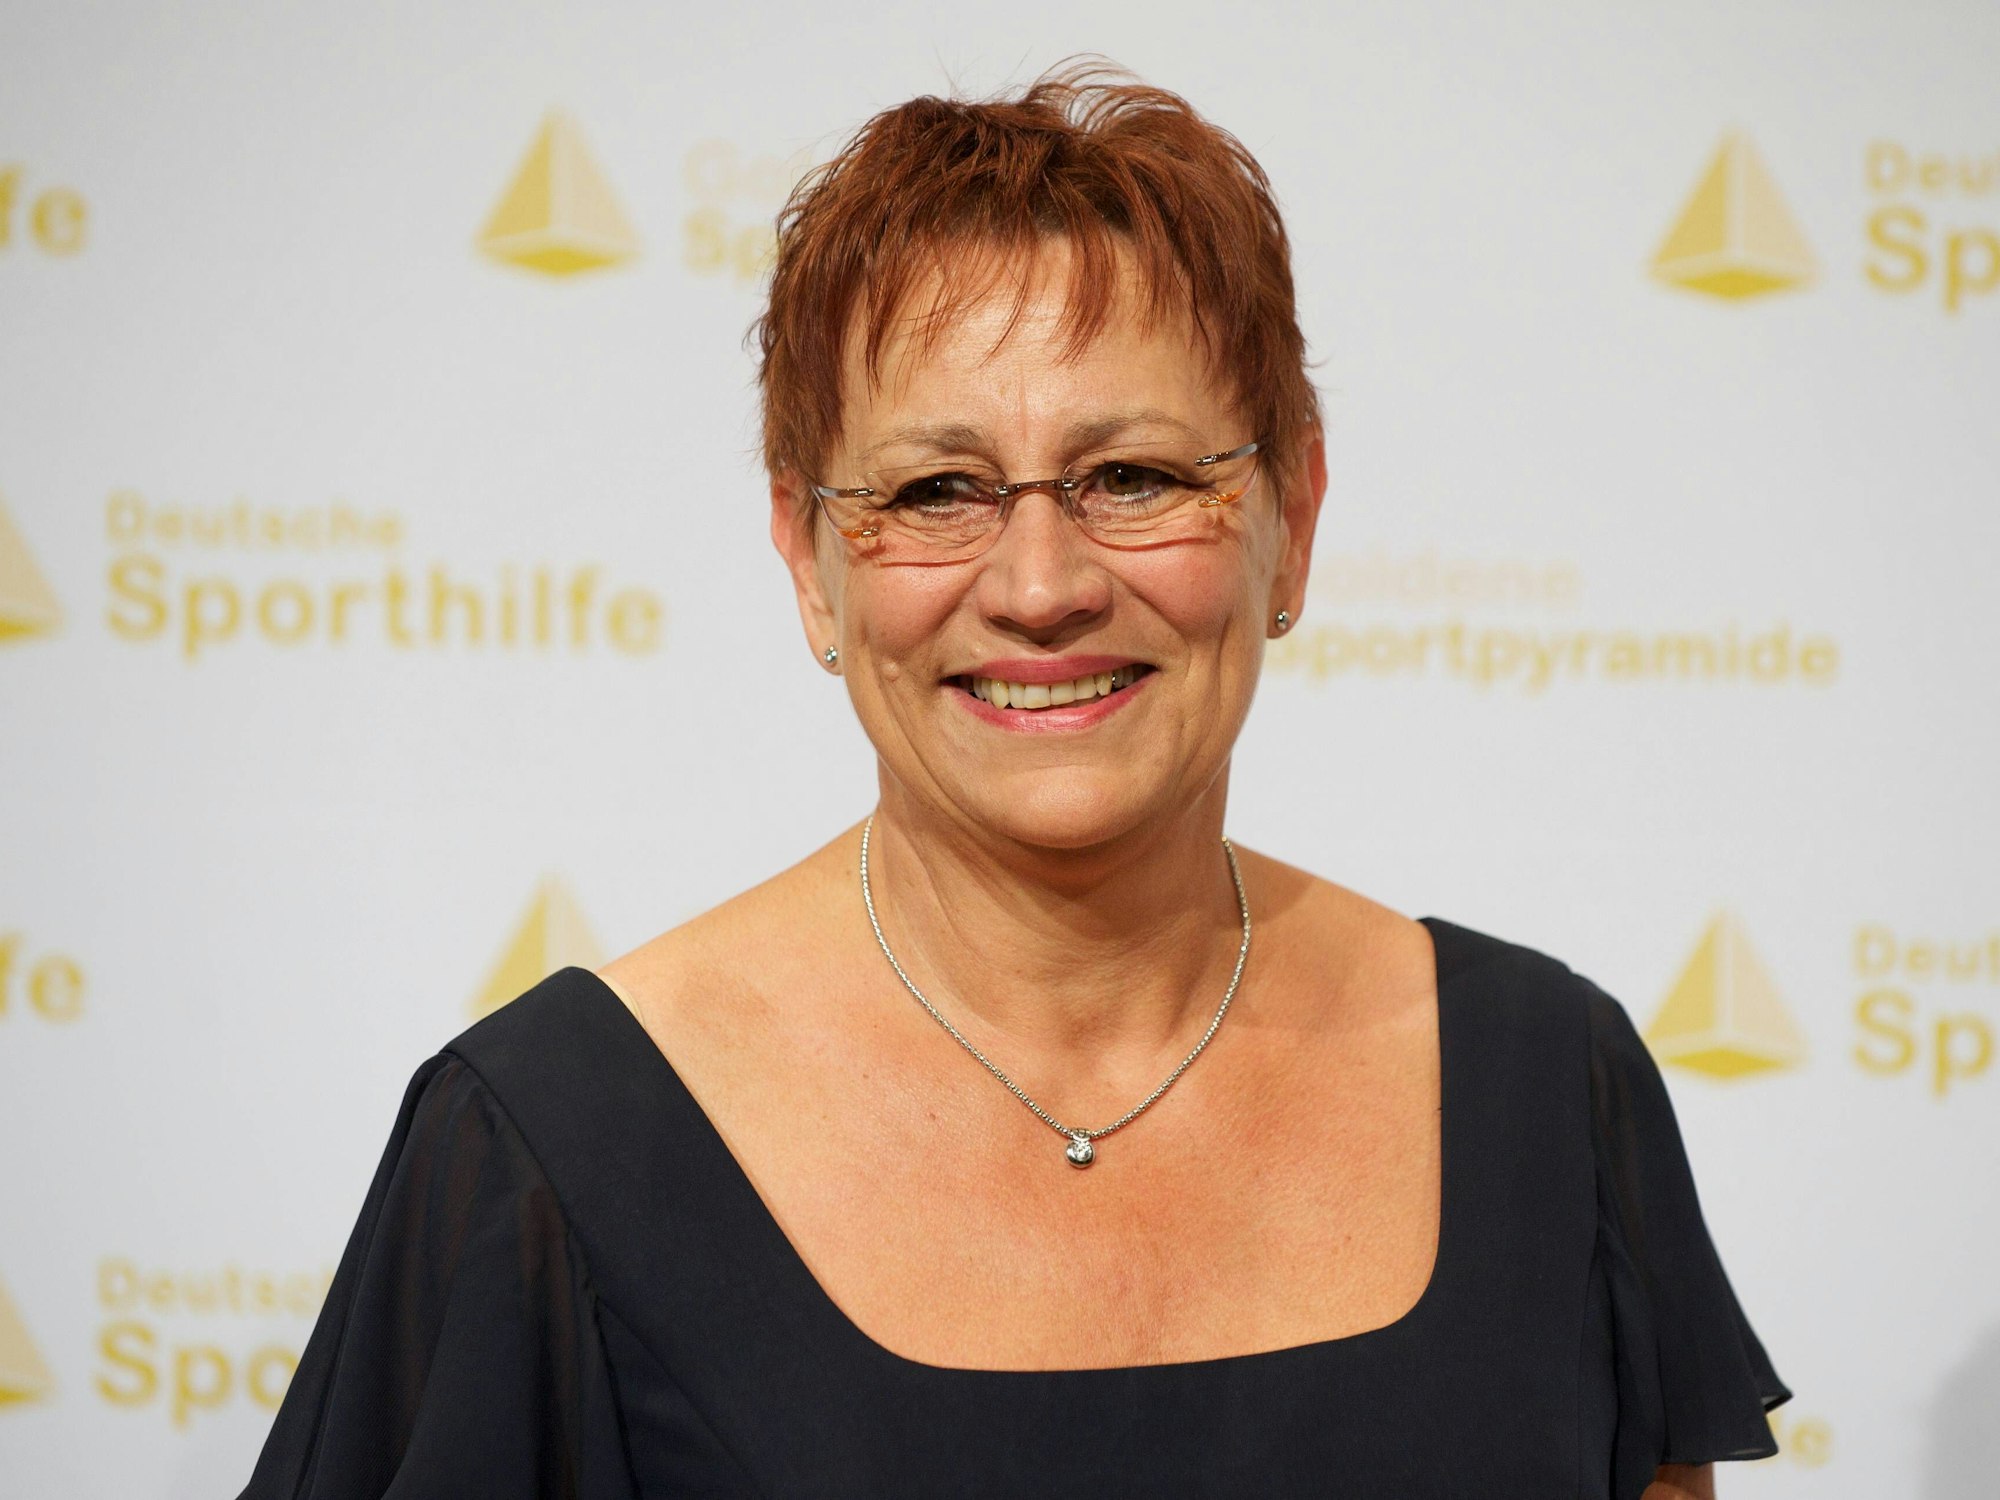 Renate Stecher bei der Verleihung der goldenen Sportpyramide 2011.